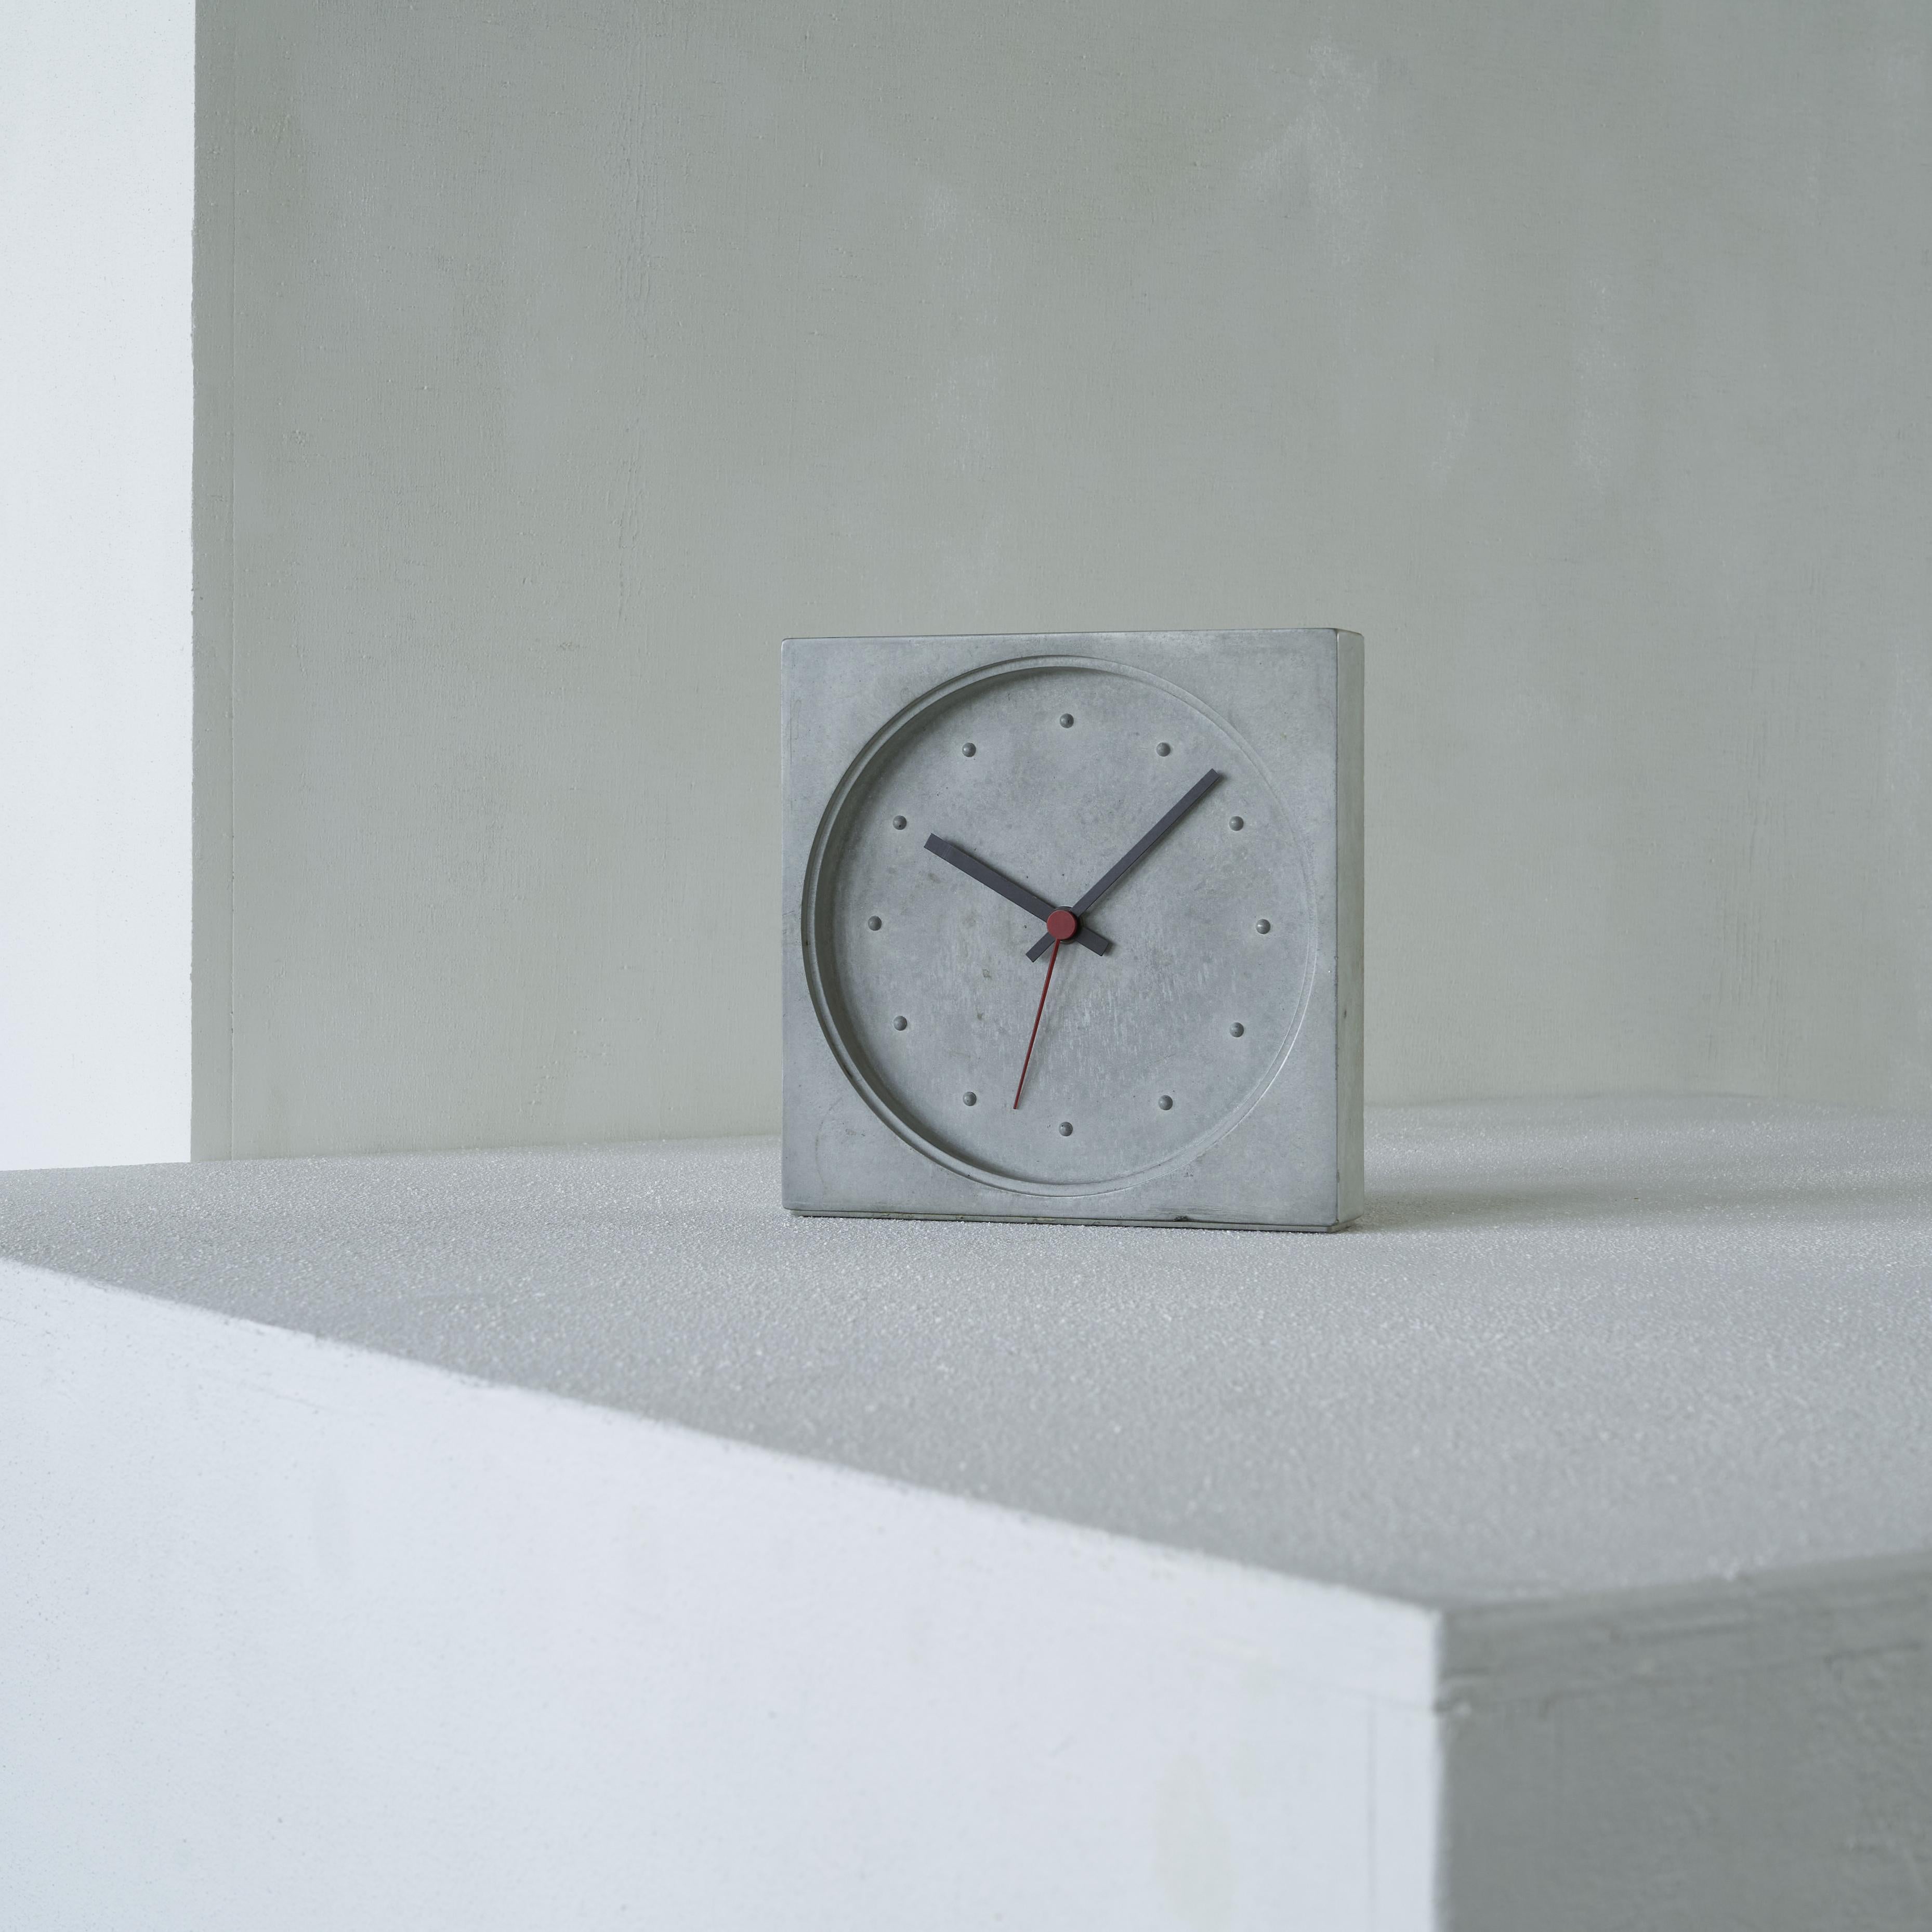 Horloge Danese Milano Kuno en béton de proie. Italie, 1986.

Il s'agit d'une horloge post-moderne en béton très rare conçue par Kuno Prey pour la société milanaise Danese. Un design très distinct et moderne qui est remarquablement intemporel. Elle